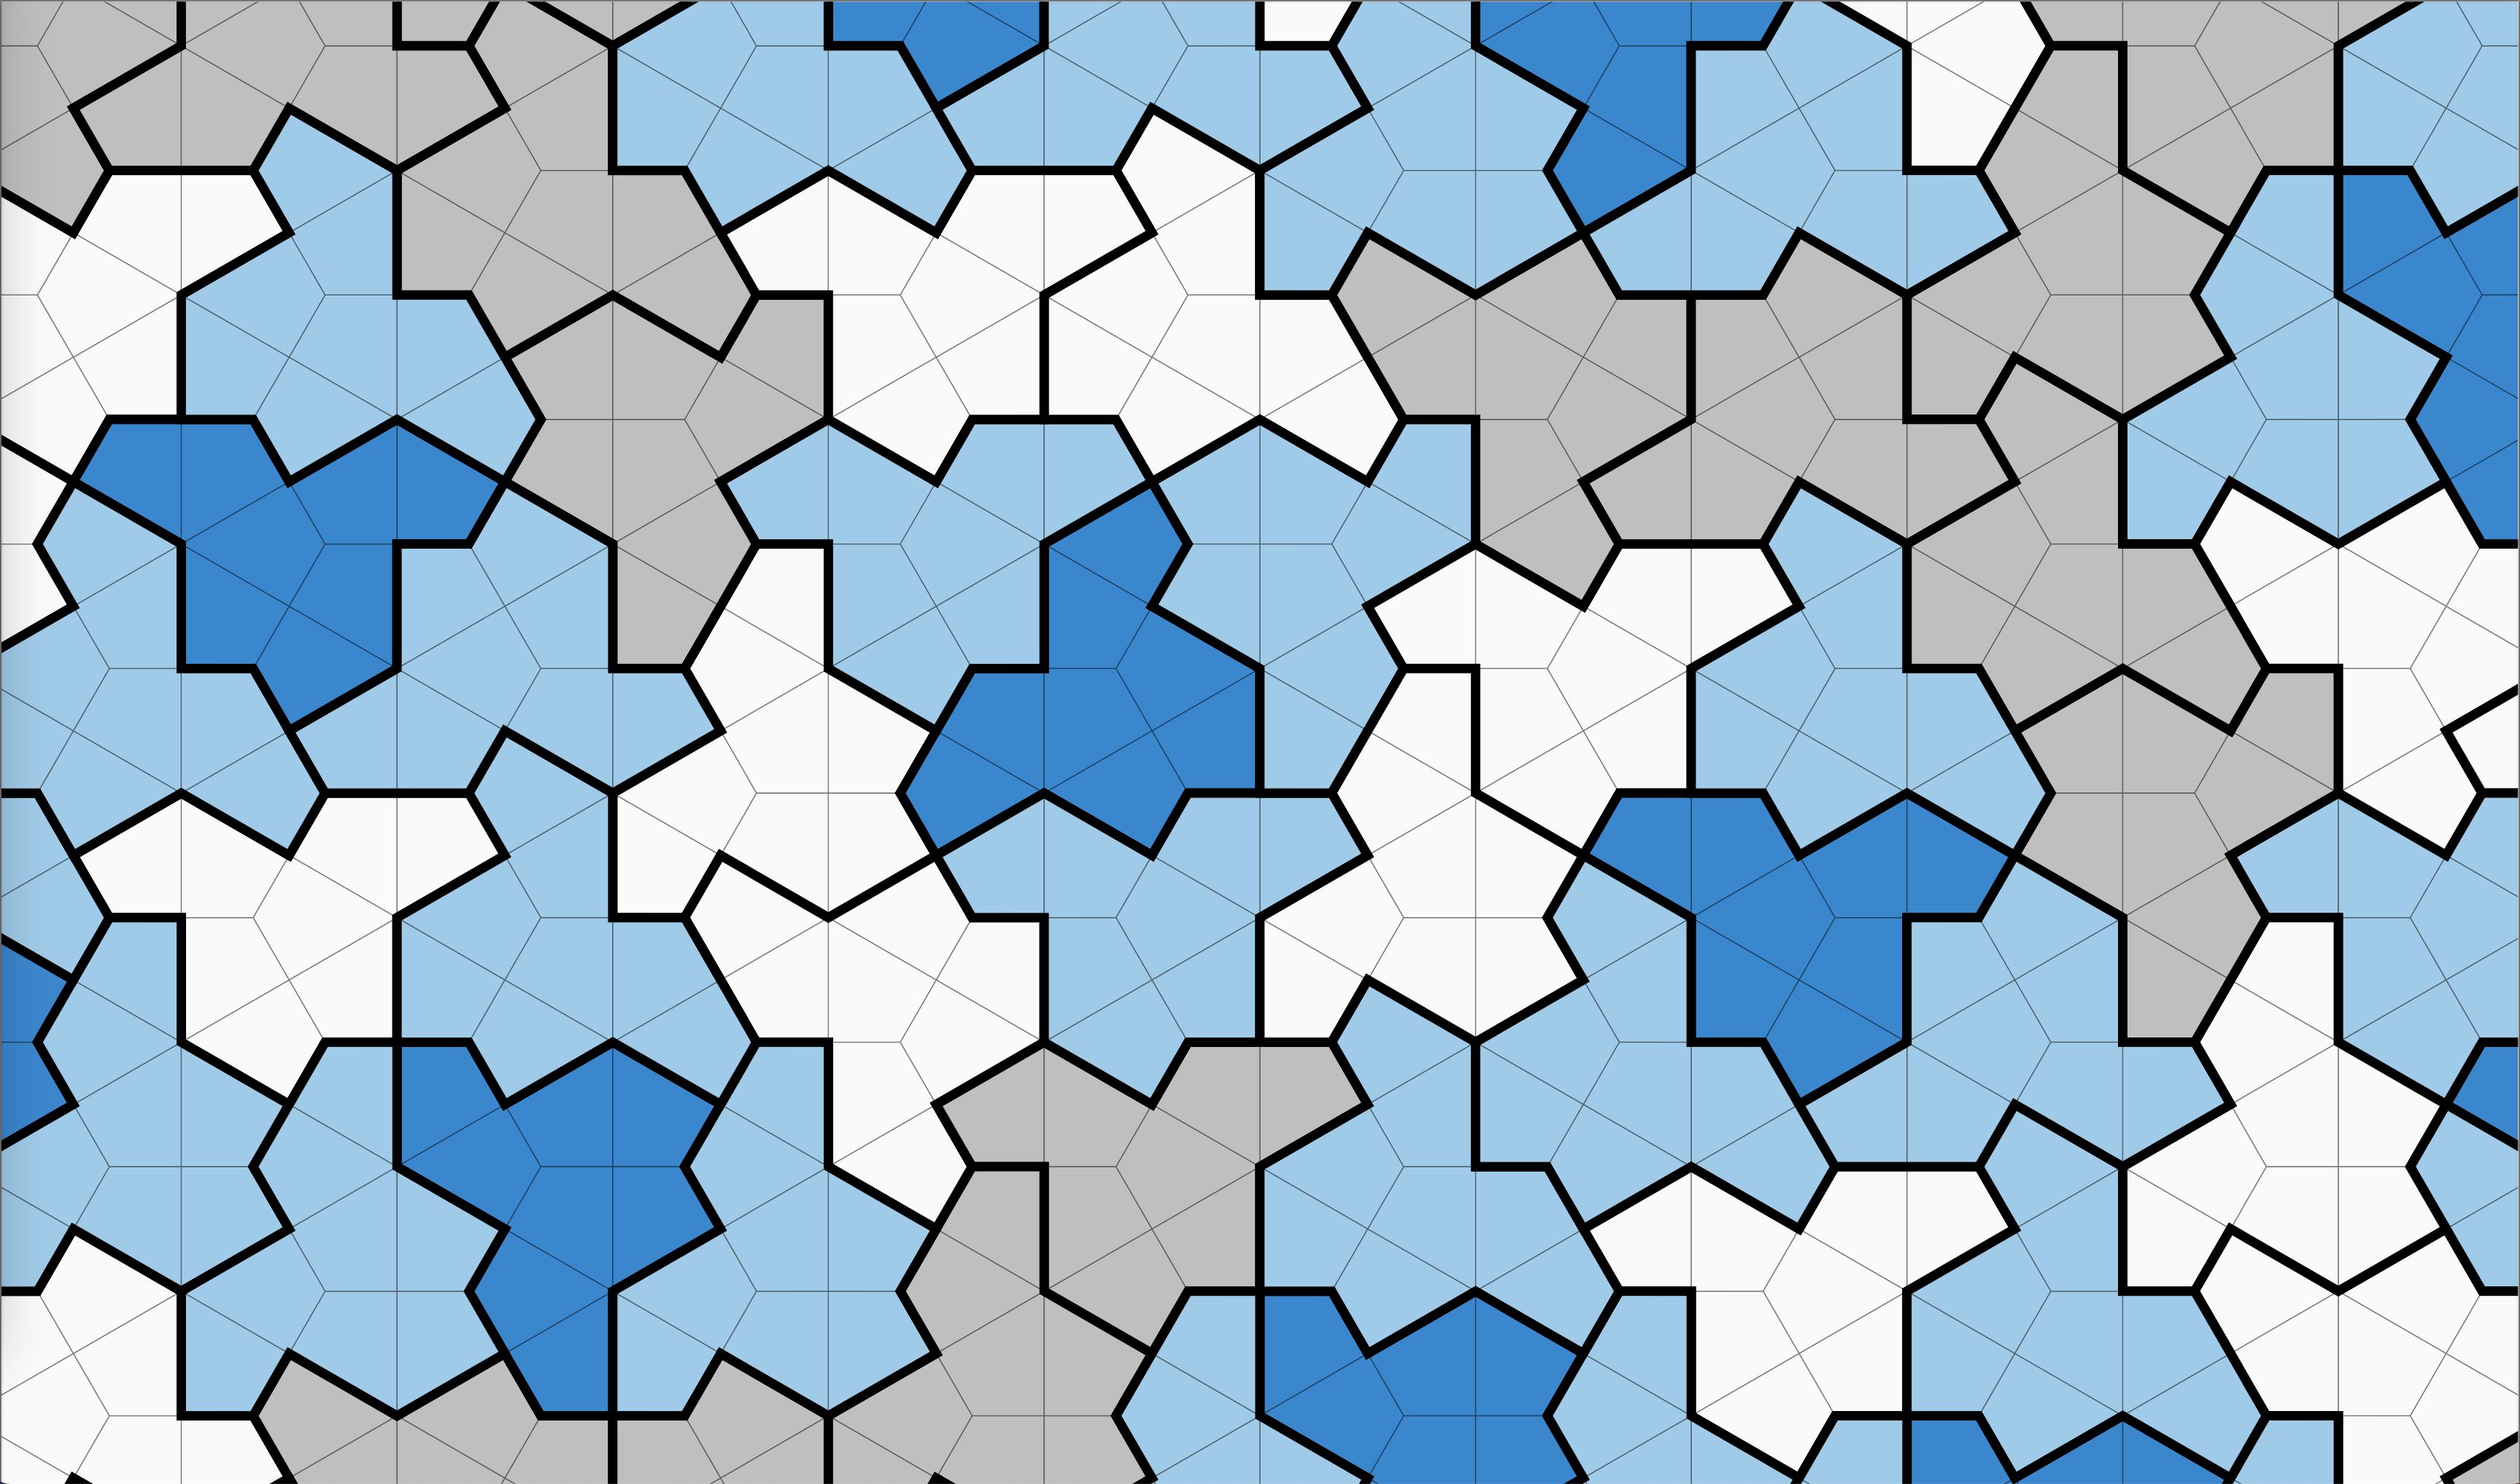 https://media.cnn.com/api/v1/images/stellar/prod/230331173106-hat-einstein-shape-tile-discovery-scn.jpg?c=original